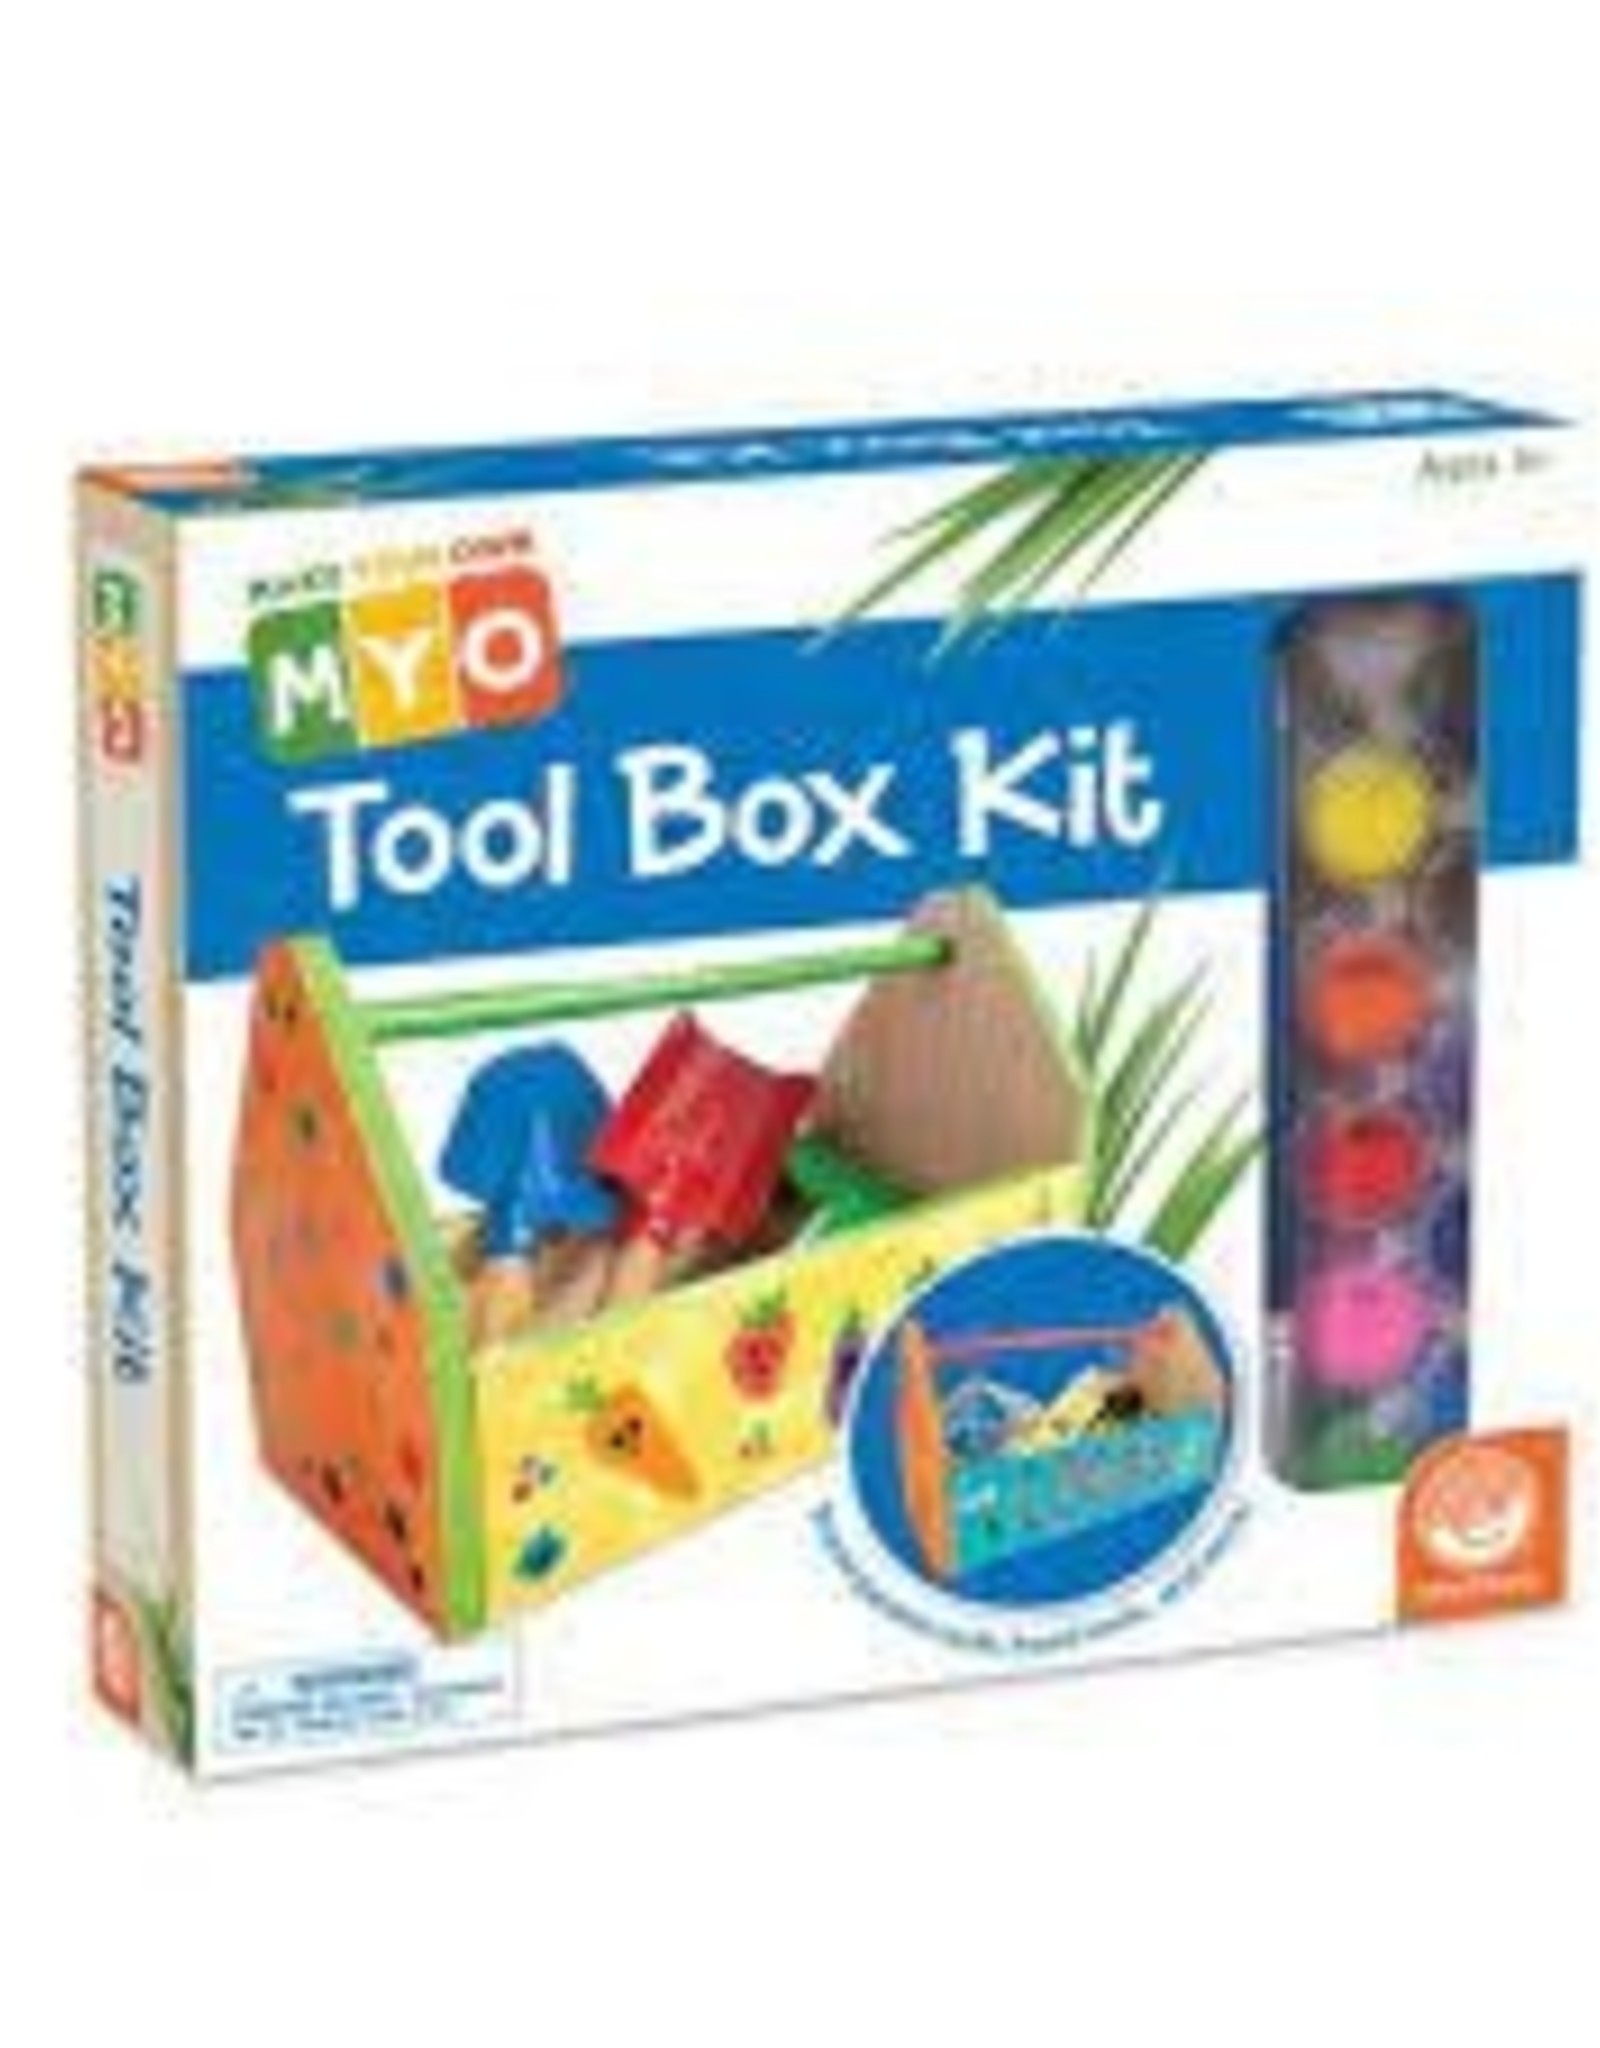 MINDWARE Myo: Tool Box